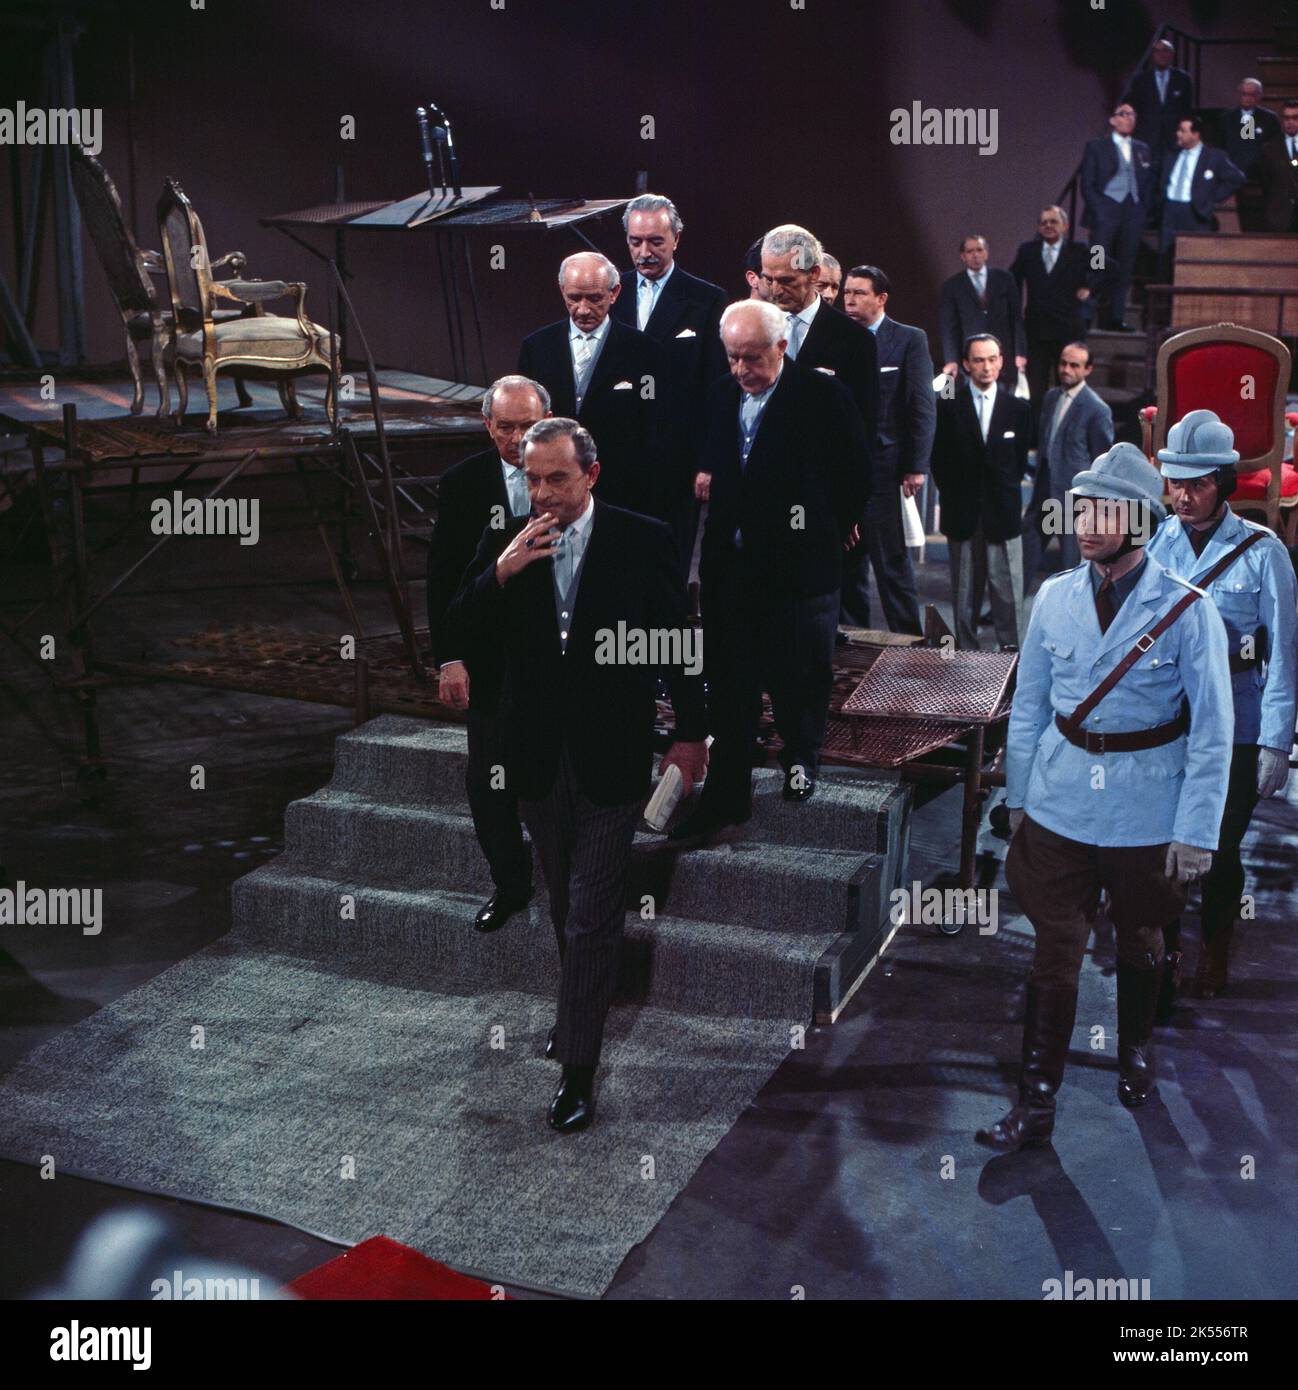 Der Belagerungszustand, Fernsehfilm nach dem Roman und Bühnenstück von Albert Camus, Deutschland 1963, Regie: Fritz Umgelter, Szenenfoto Stock Photo